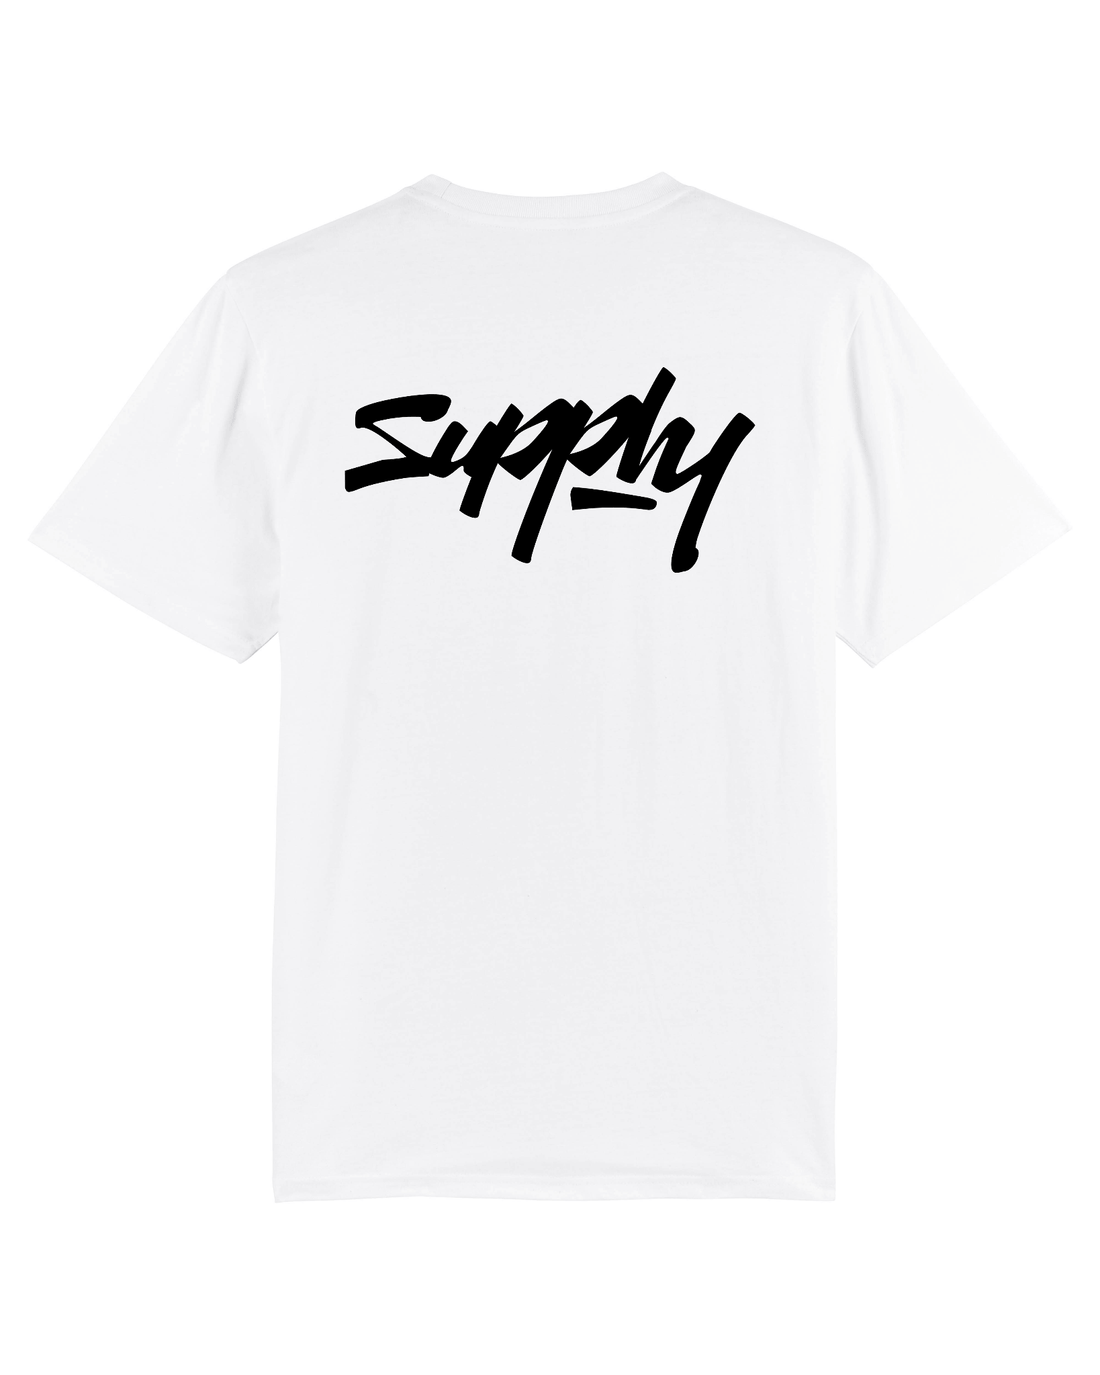 White Skater T-shirt, Supply V2 Back Print